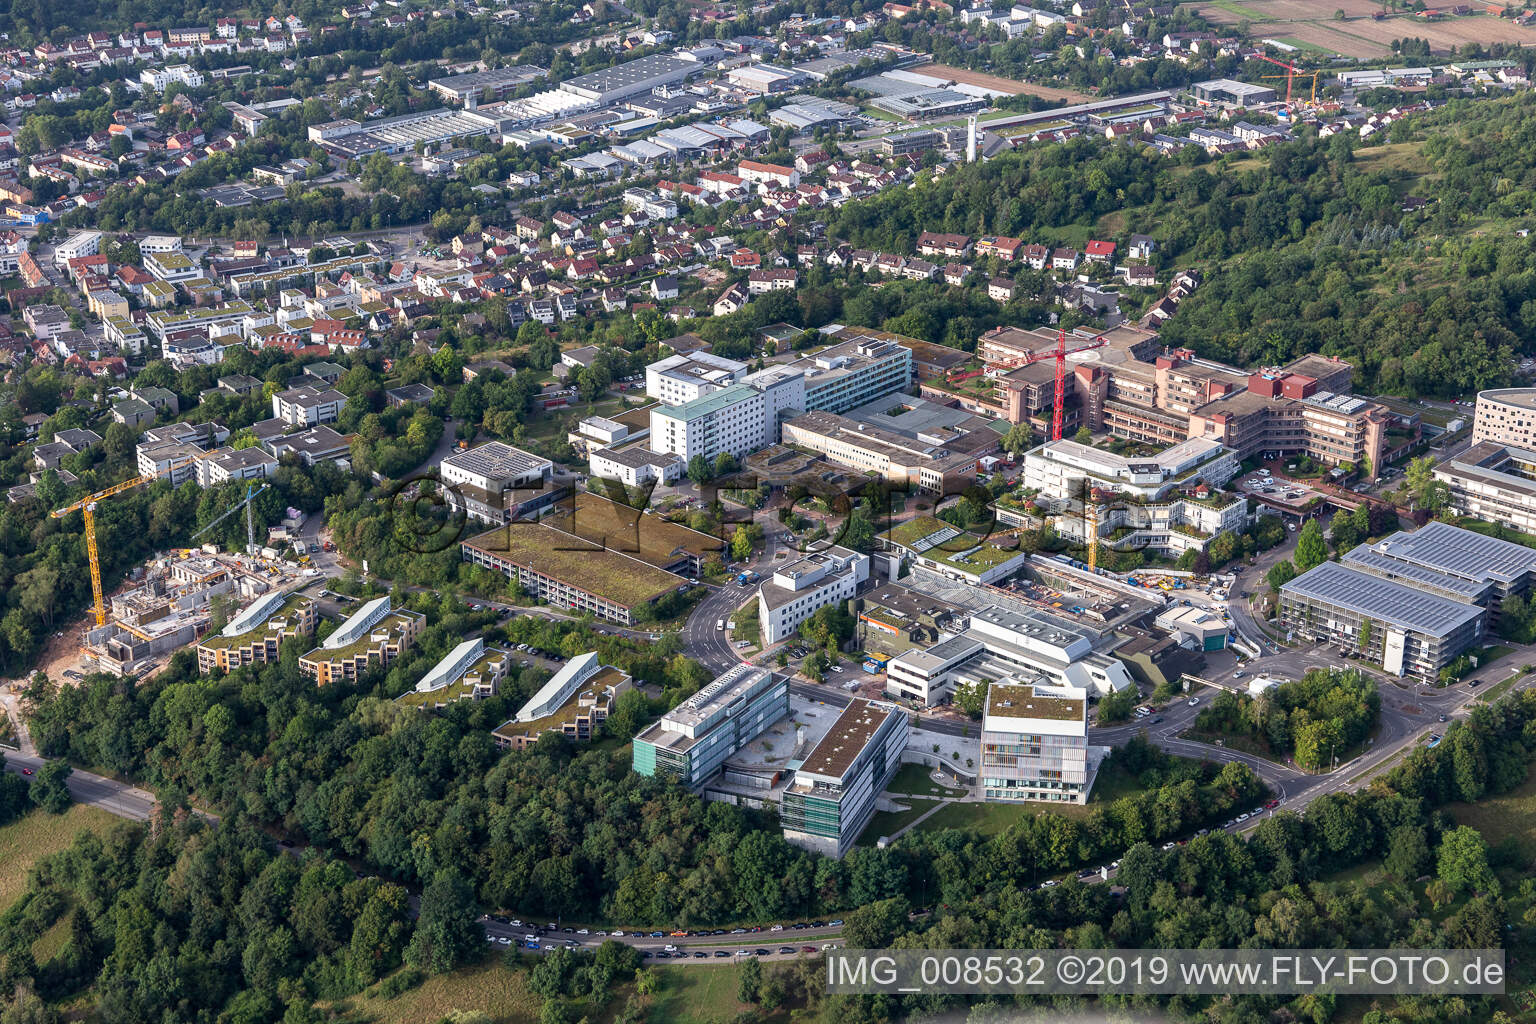 Hôpital universitaire Tübingen à Tübingen dans le département Bade-Wurtemberg, Allemagne vue du ciel